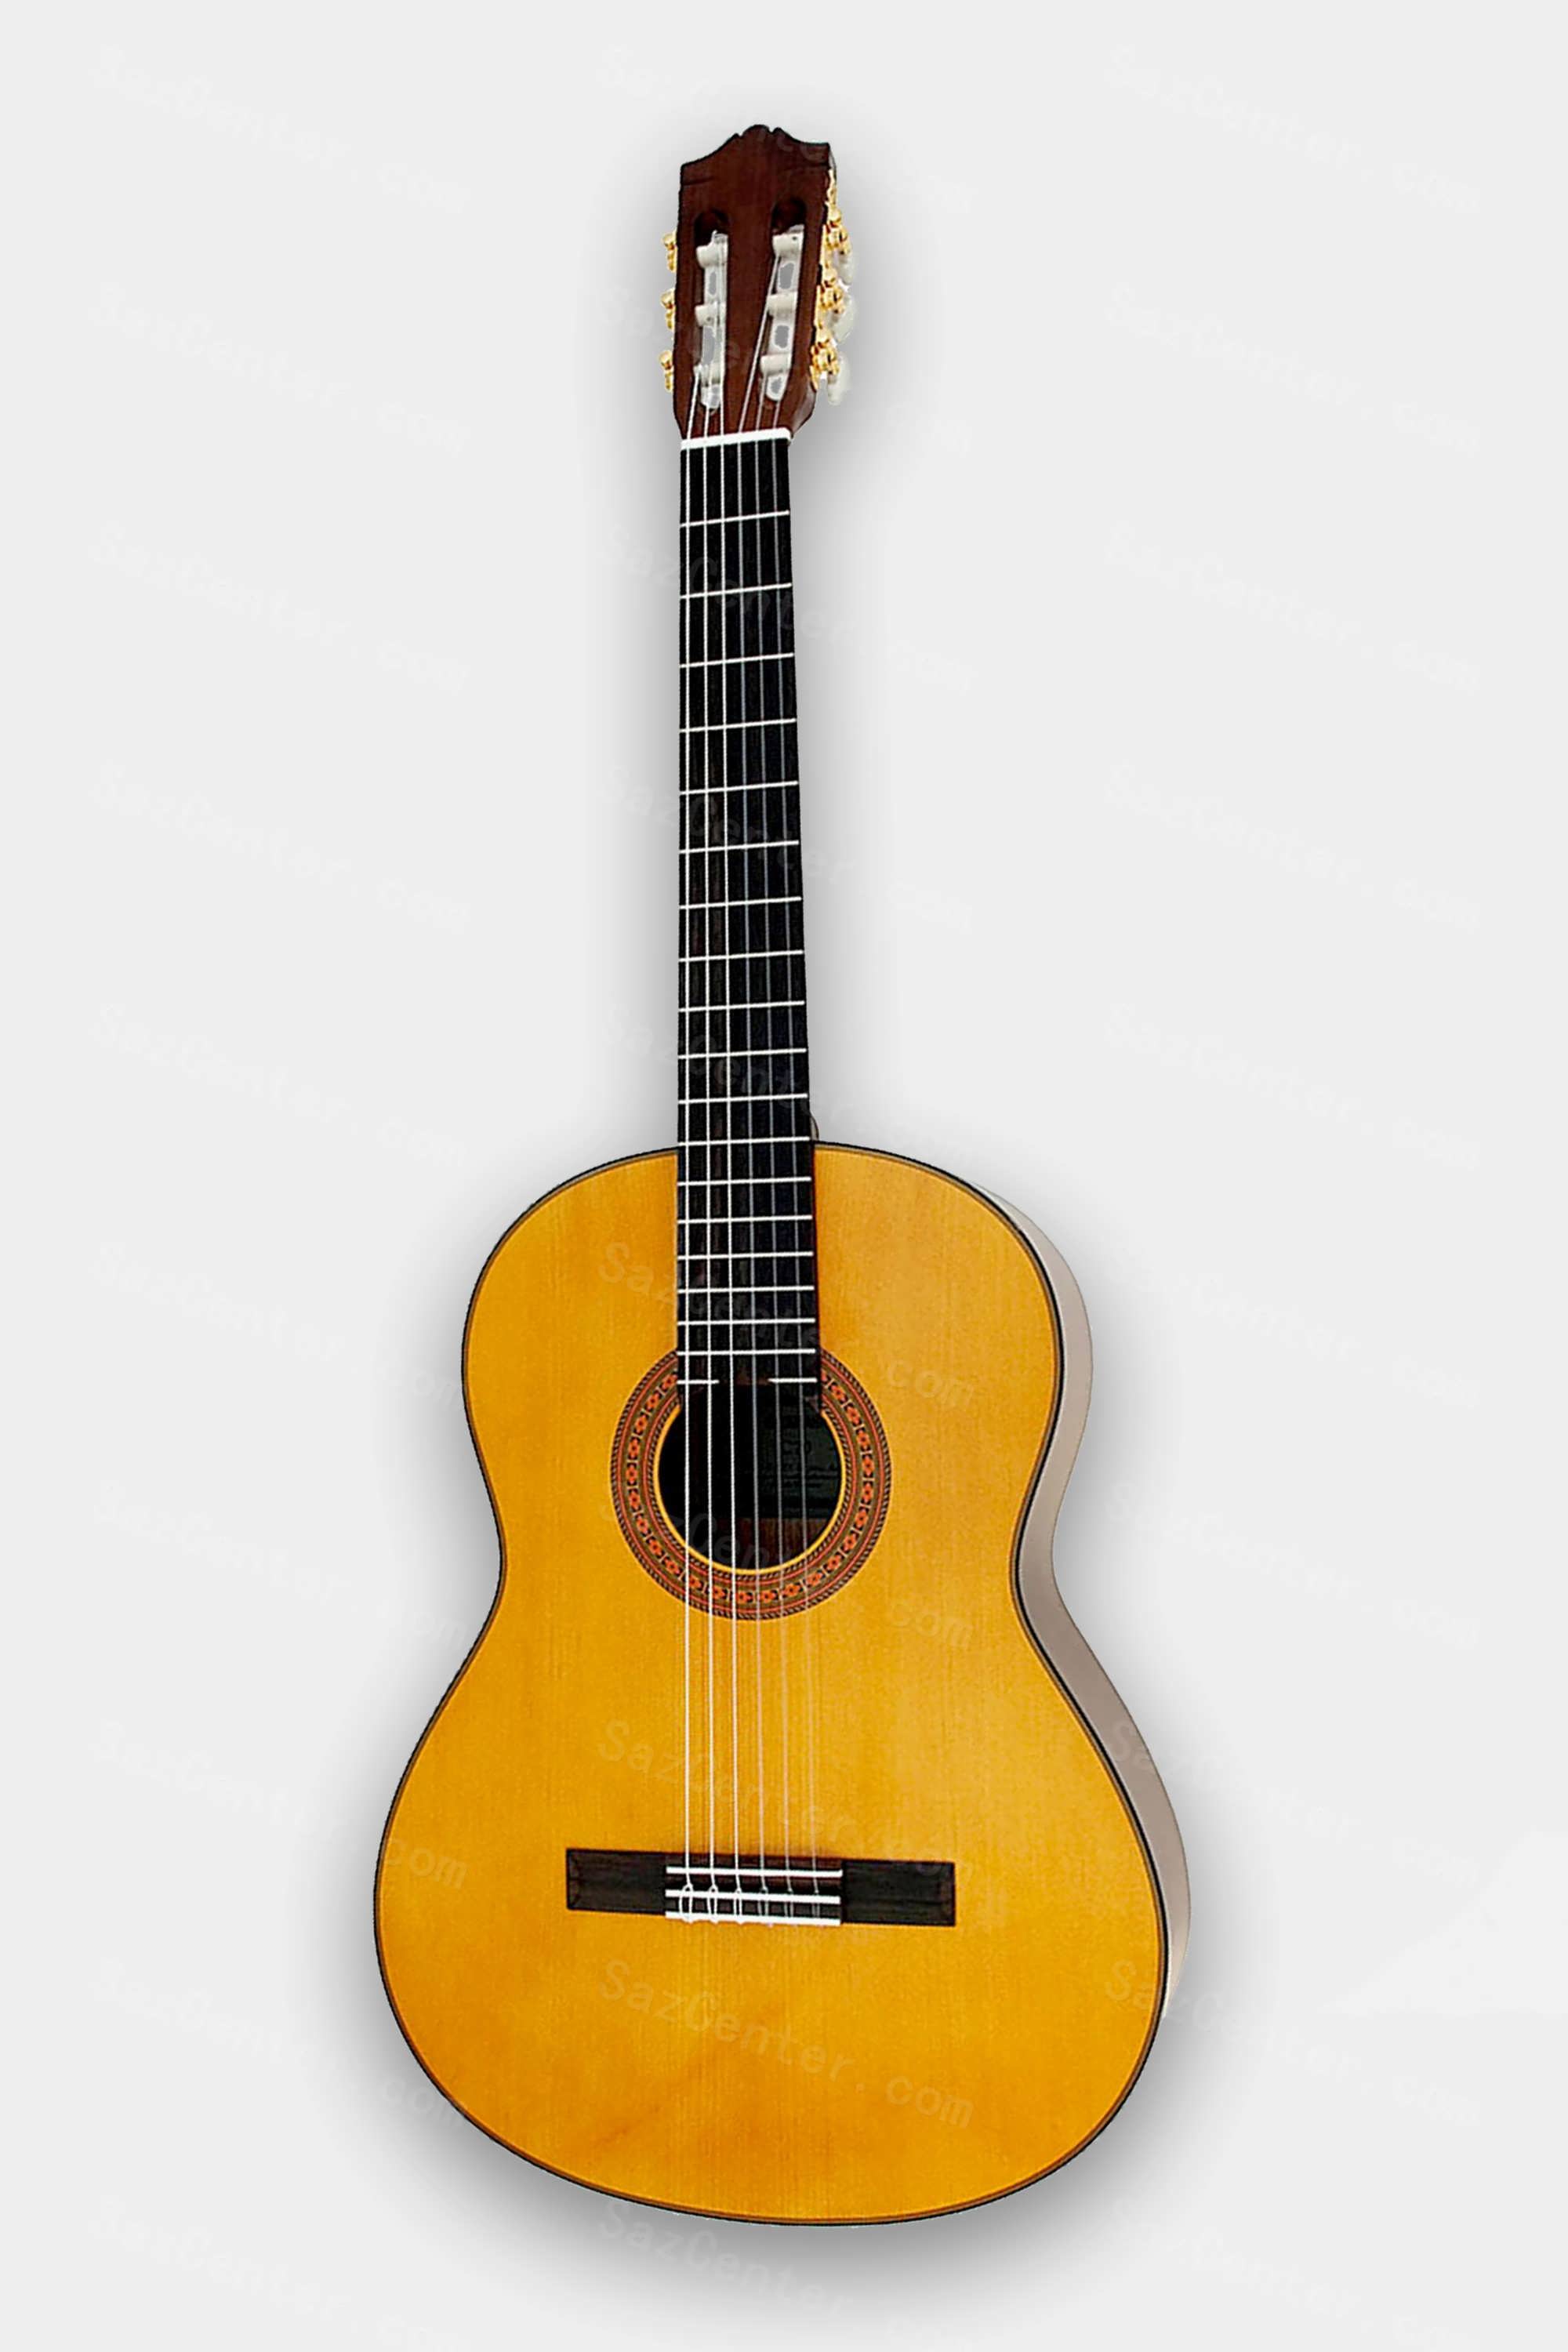 عکس گیتار کلاسیک با قیمت